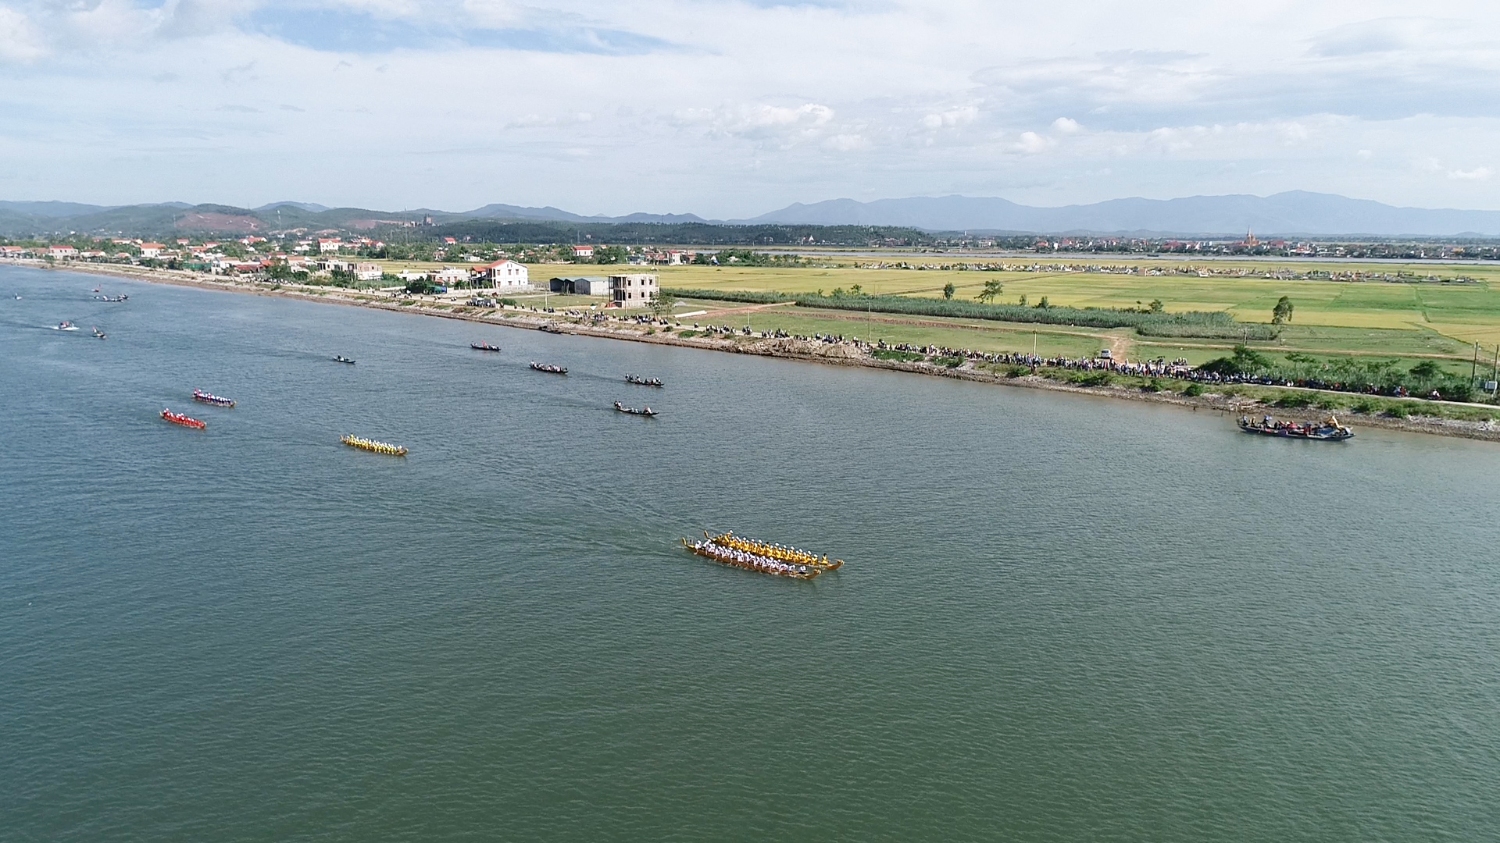 Hình ảnh Lễ hội đua thuyền trên Sông Gianh lần thứ nhất - 2018